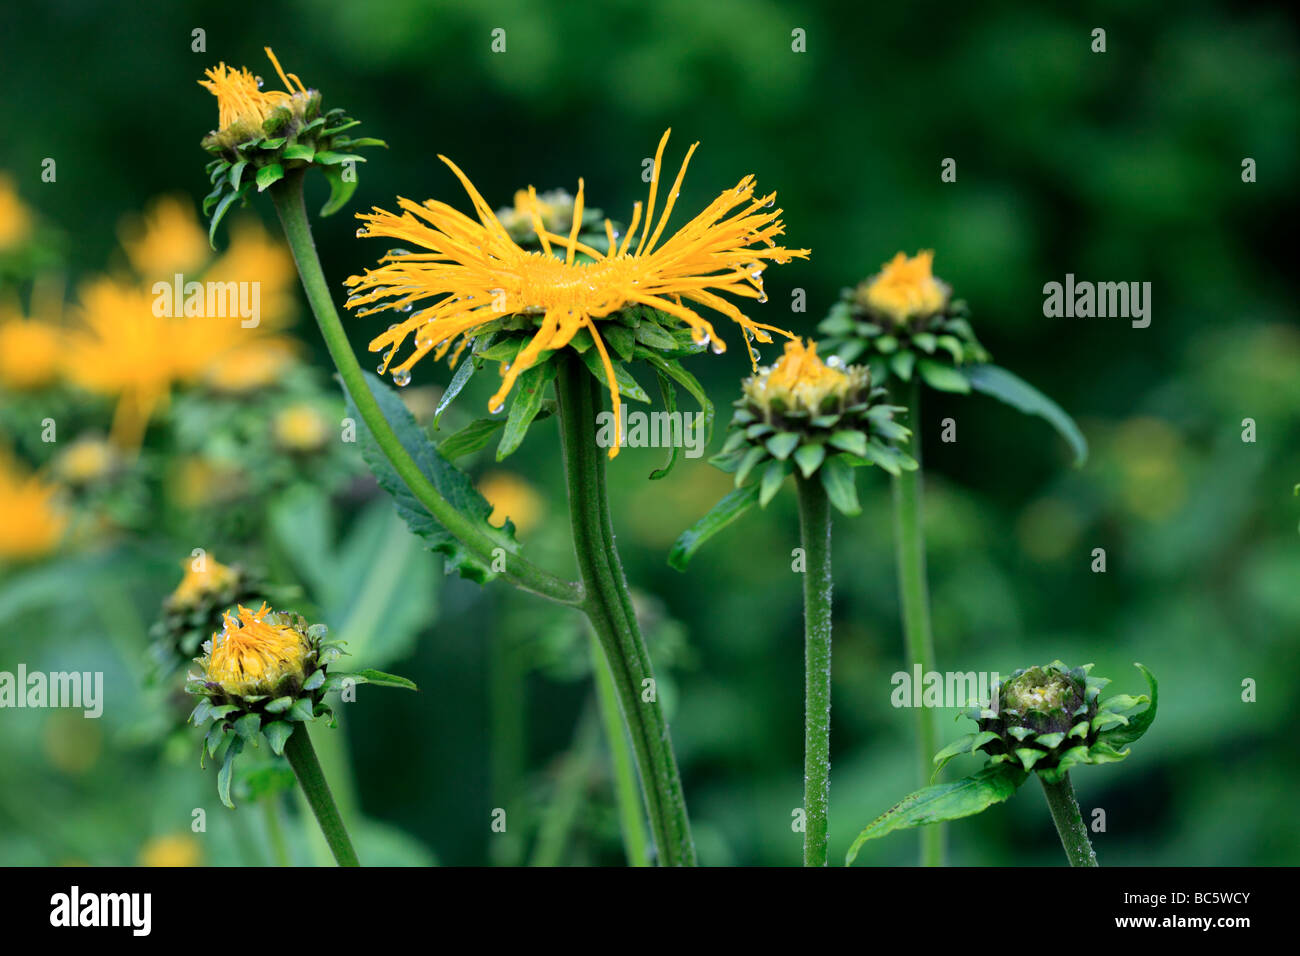 Inula giallo ricoperto di fiori con gocce di pioggia Foto Stock